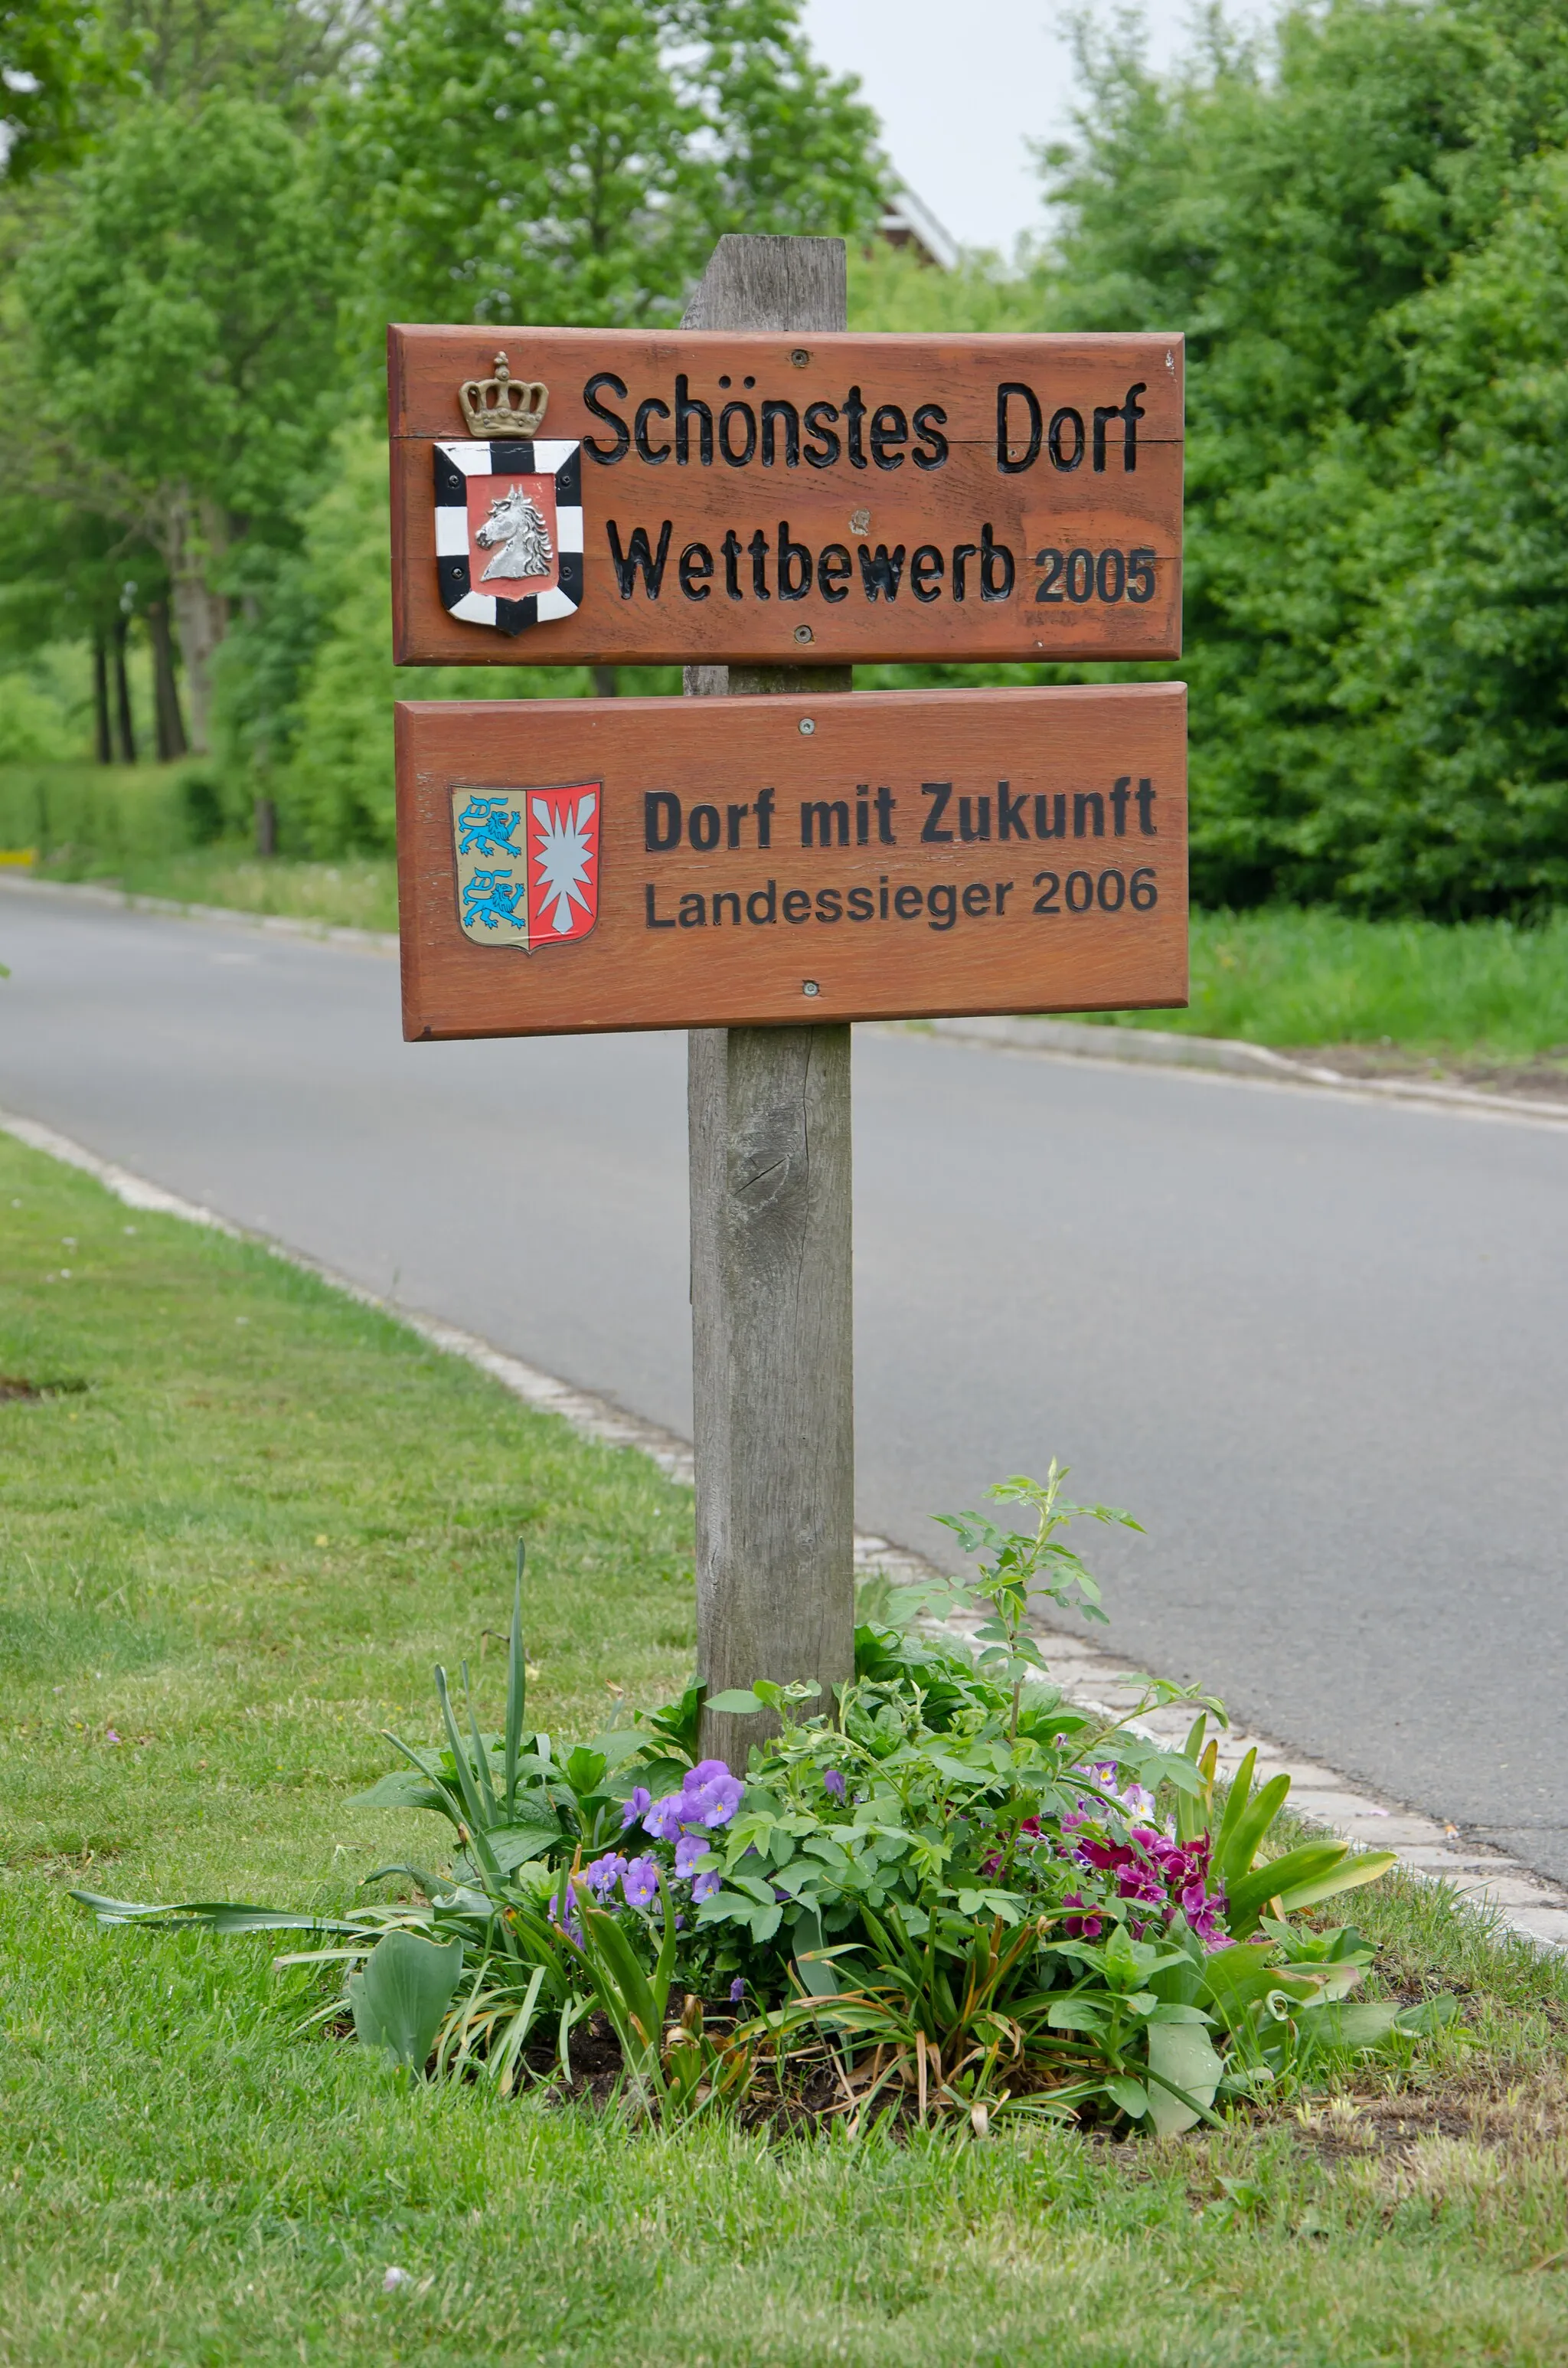 Photo showing: Duvensee Schild mit den Auszeichnungen "Schönstes Dorf"- Wettbewerb 2005 "Dorf mit Zukunft" Landessieger 2005